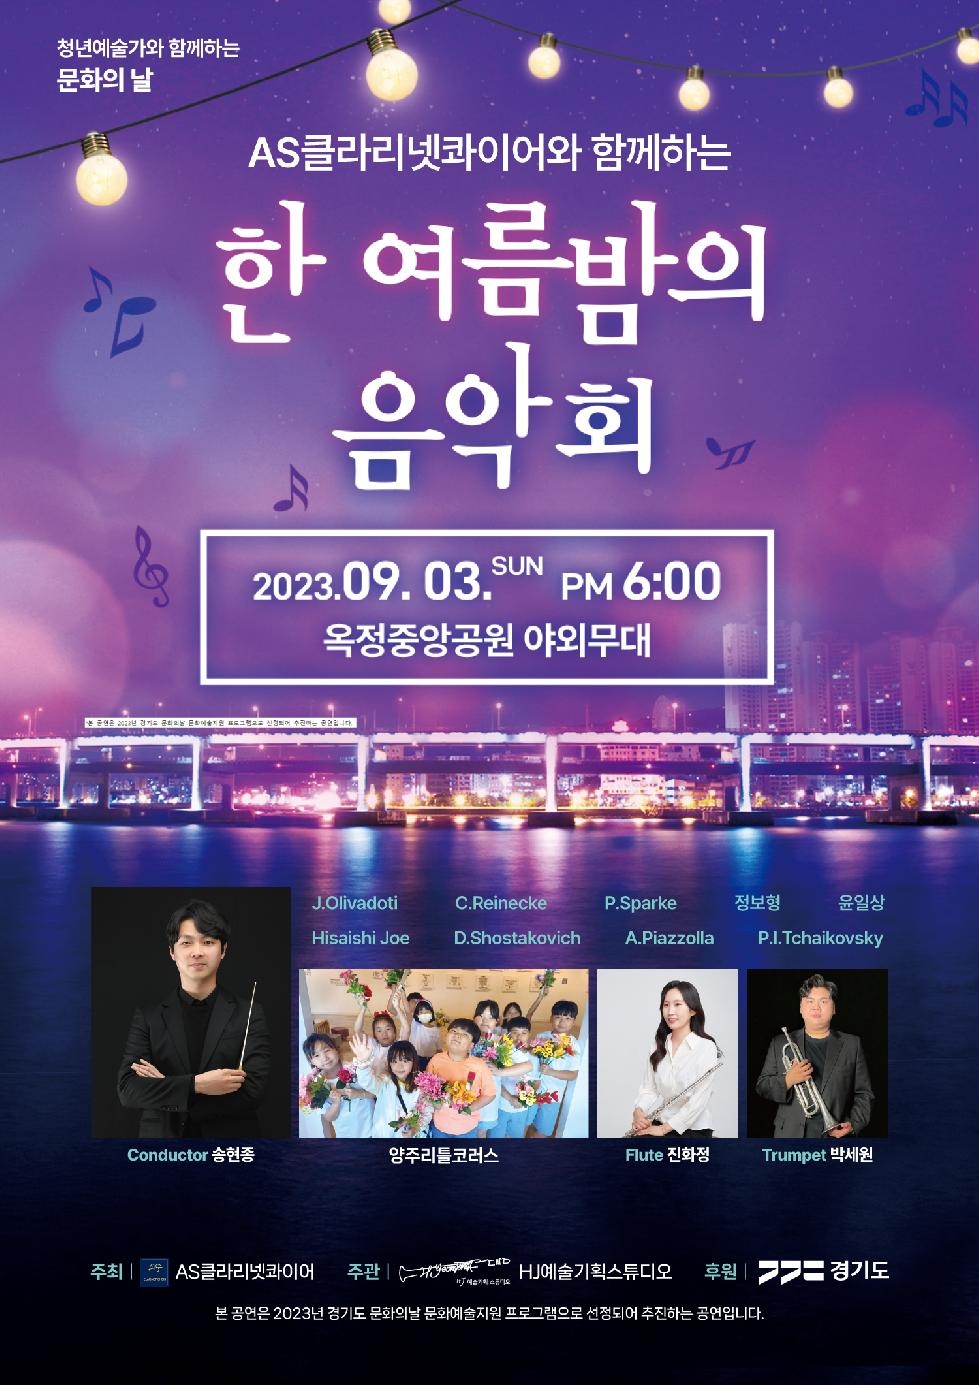 양주시, AS클라리넷콰이어와 함께하는 ‘한 여름밤의 음악회’개최